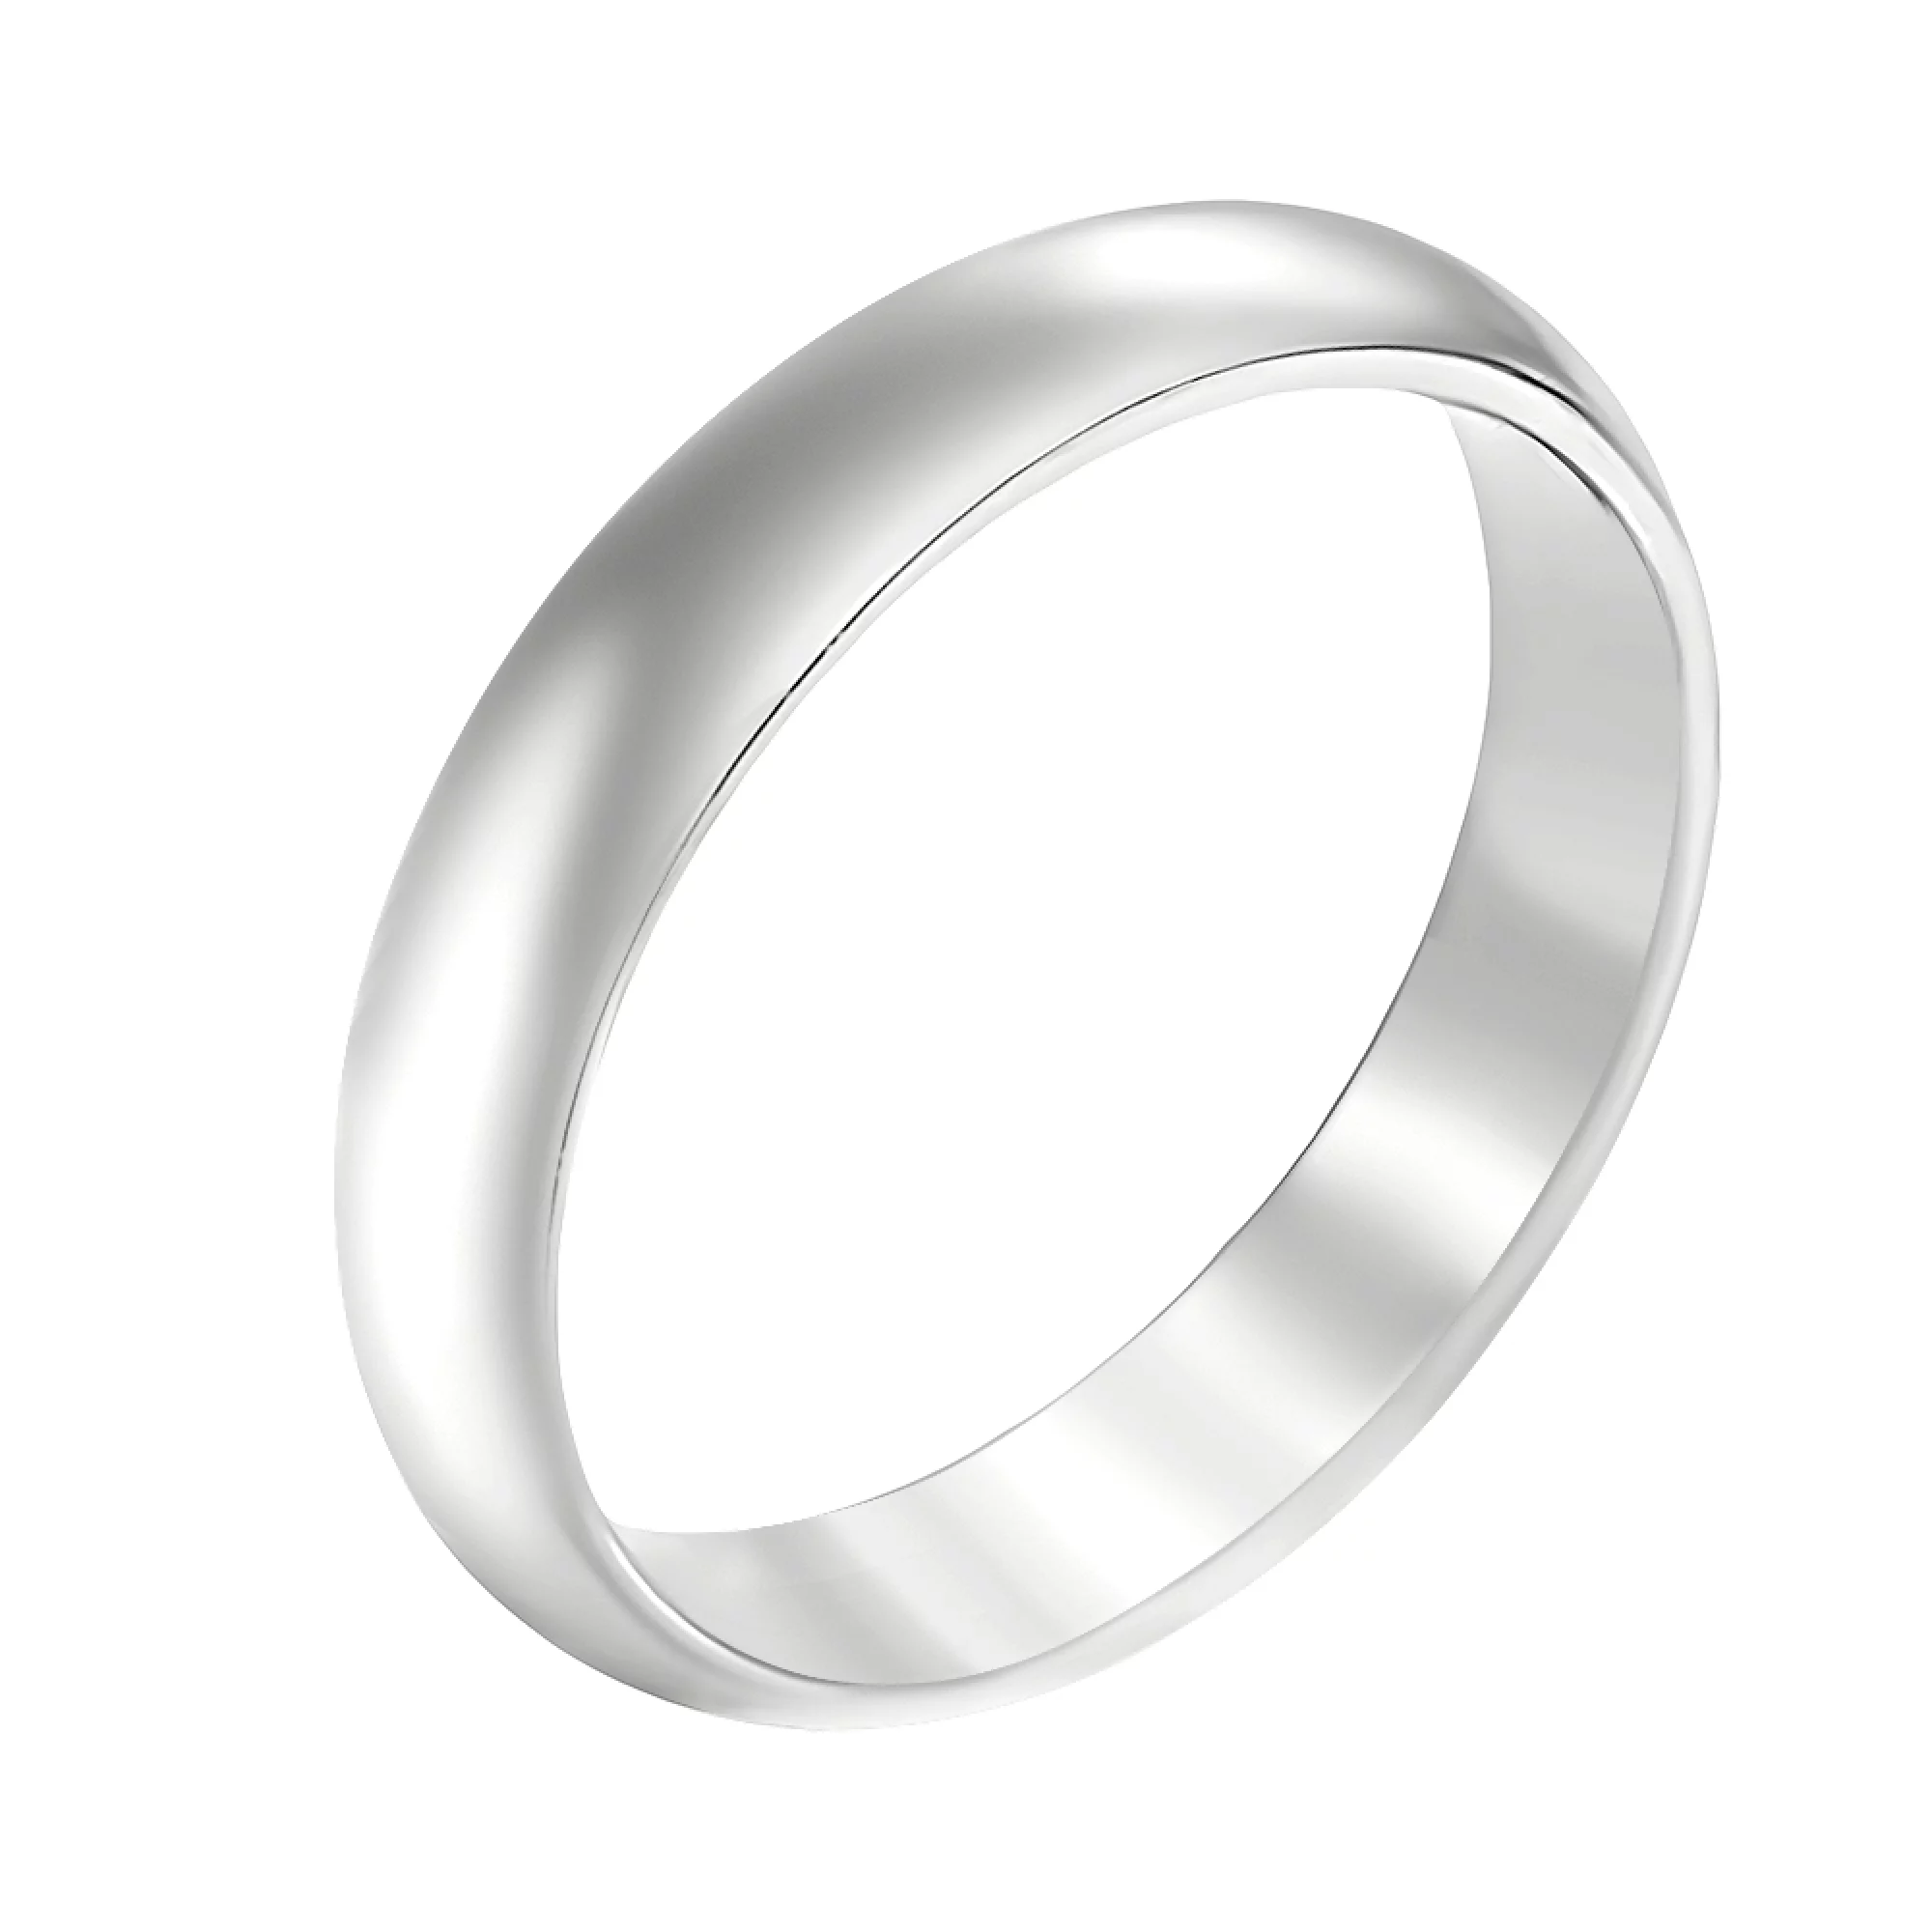 Обручальное кольцо комфорт из белого золота в классическом стиле - 1353549 – изображение 1